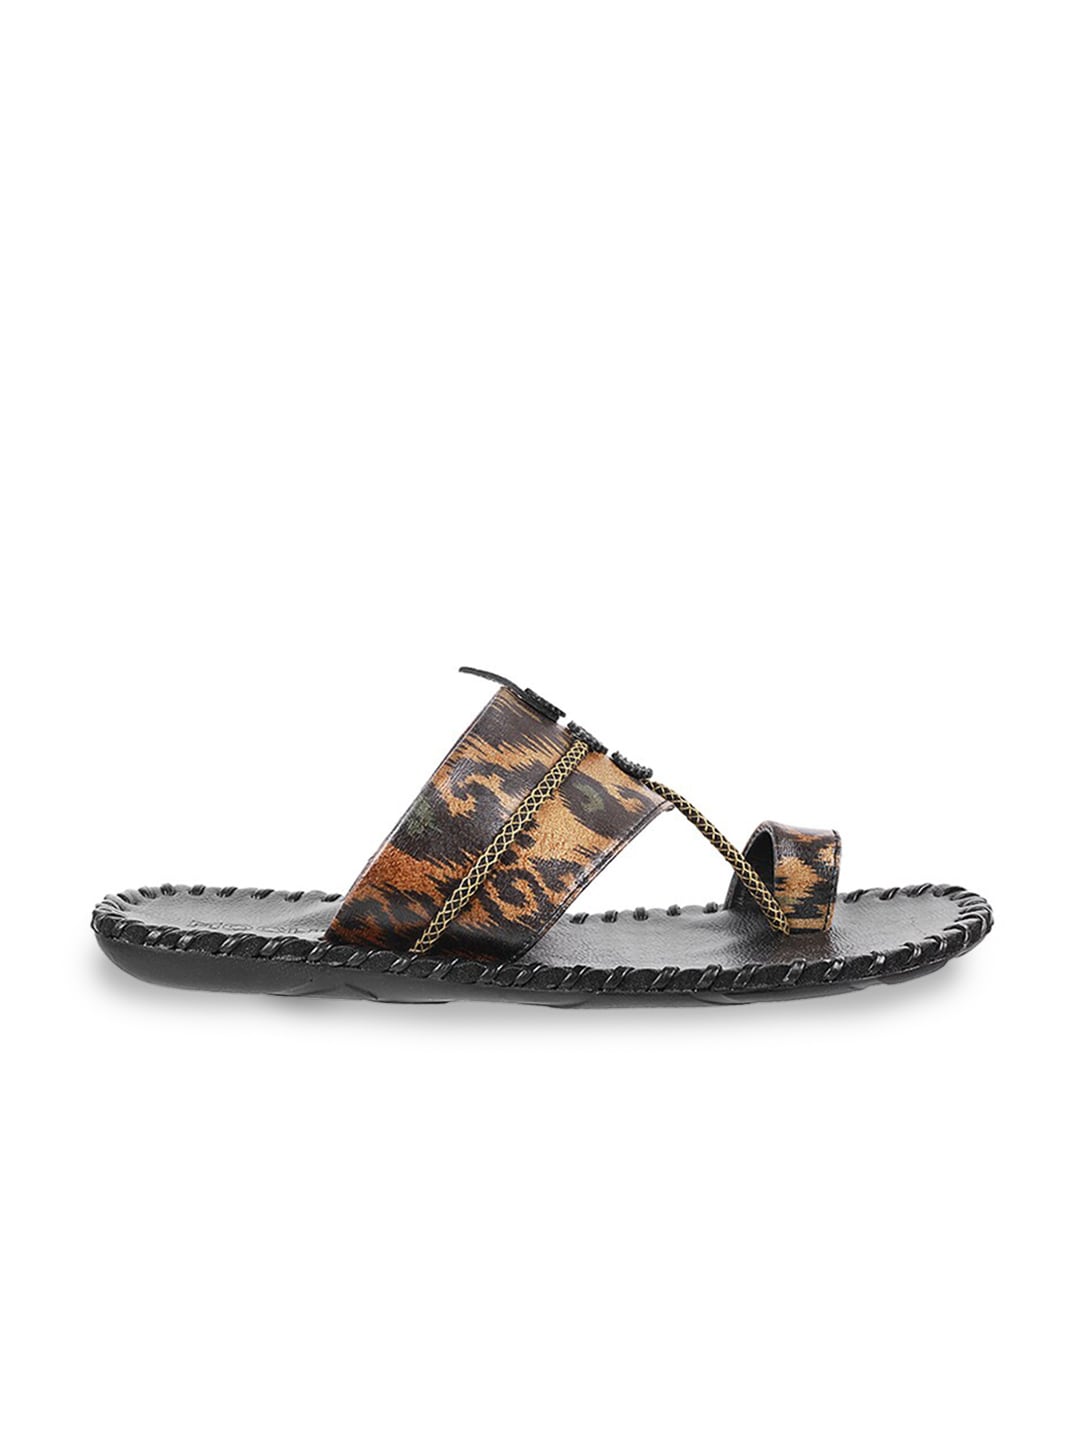 Mochi Men Brown Ethnic Comfort Sandals - Distacart